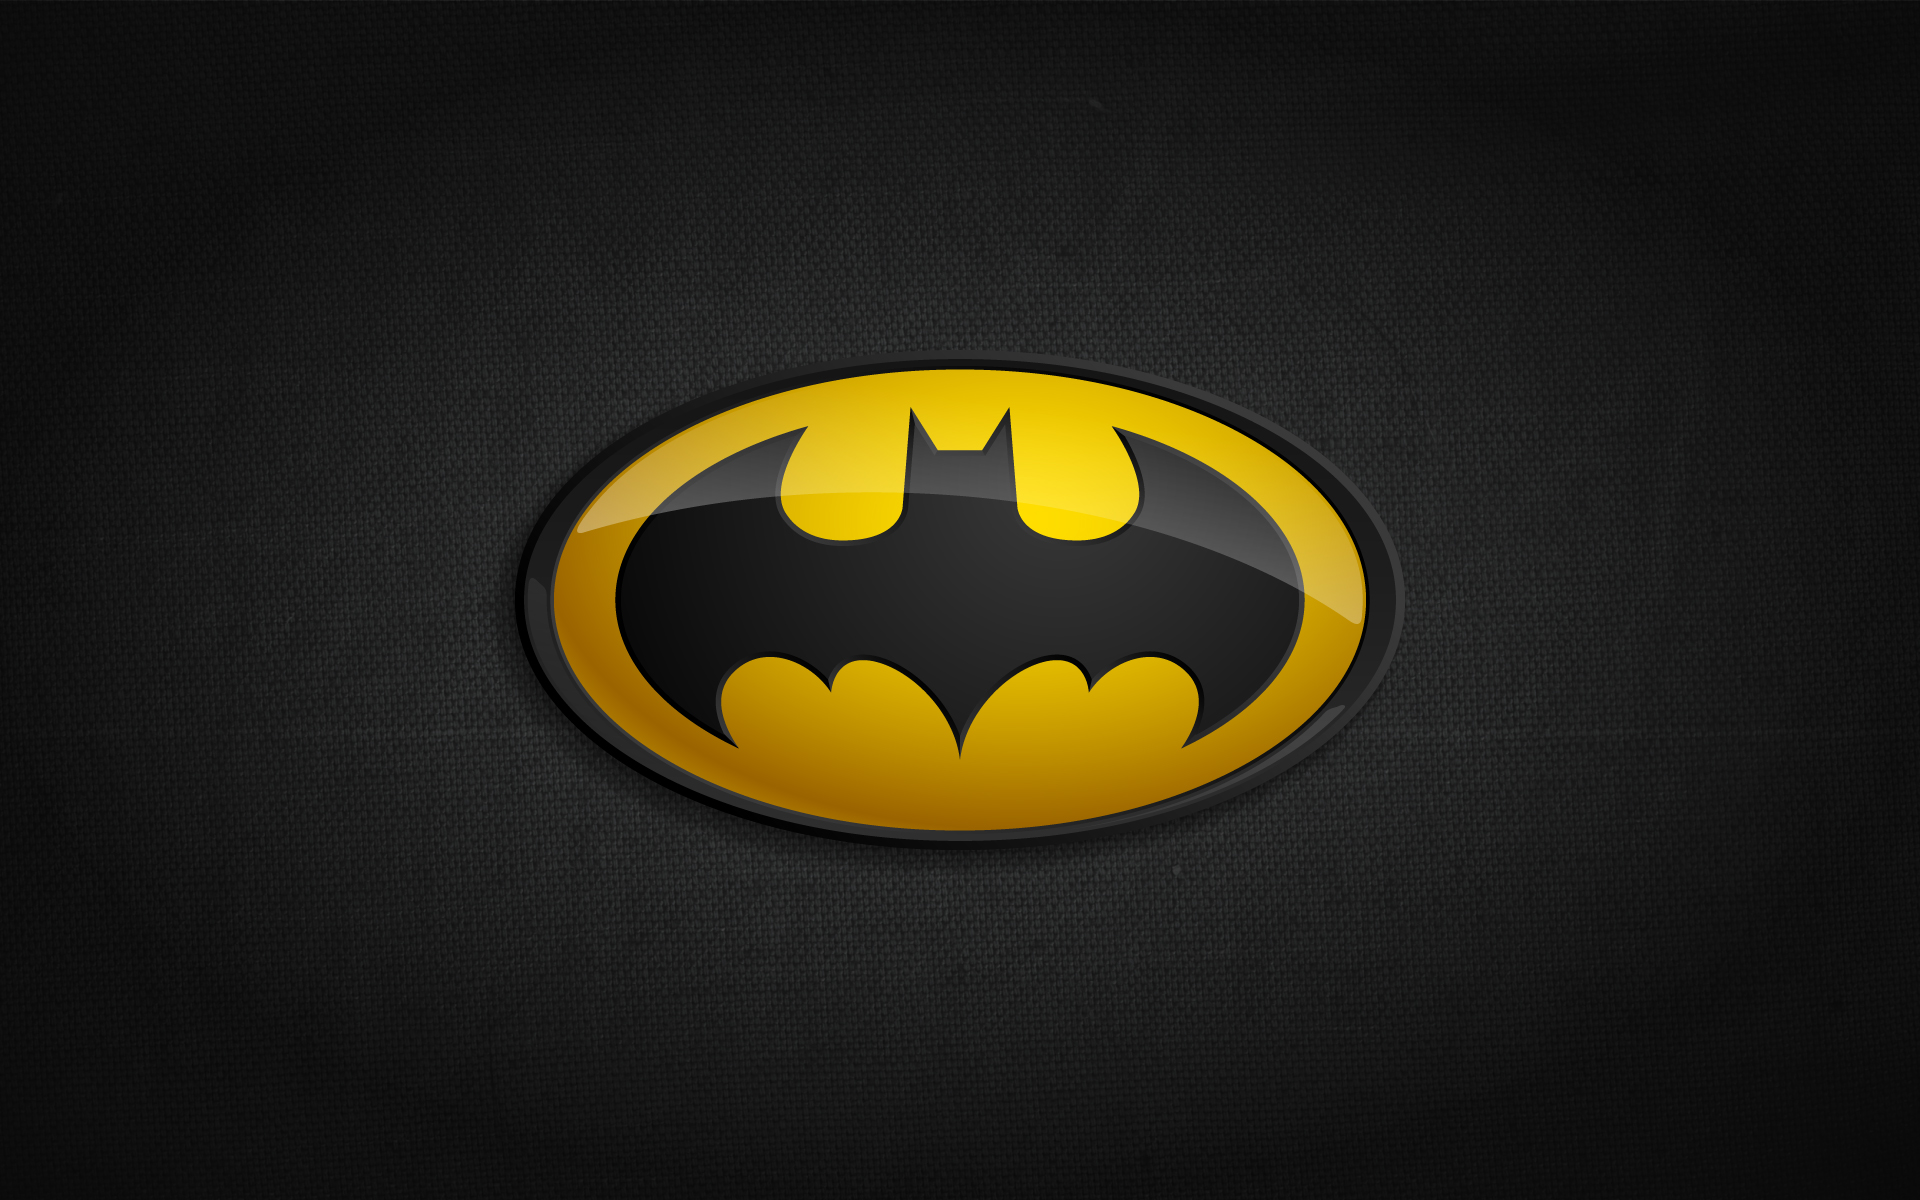 Description Batman Logo Wallpaper is a hi res Wallpaper for pc